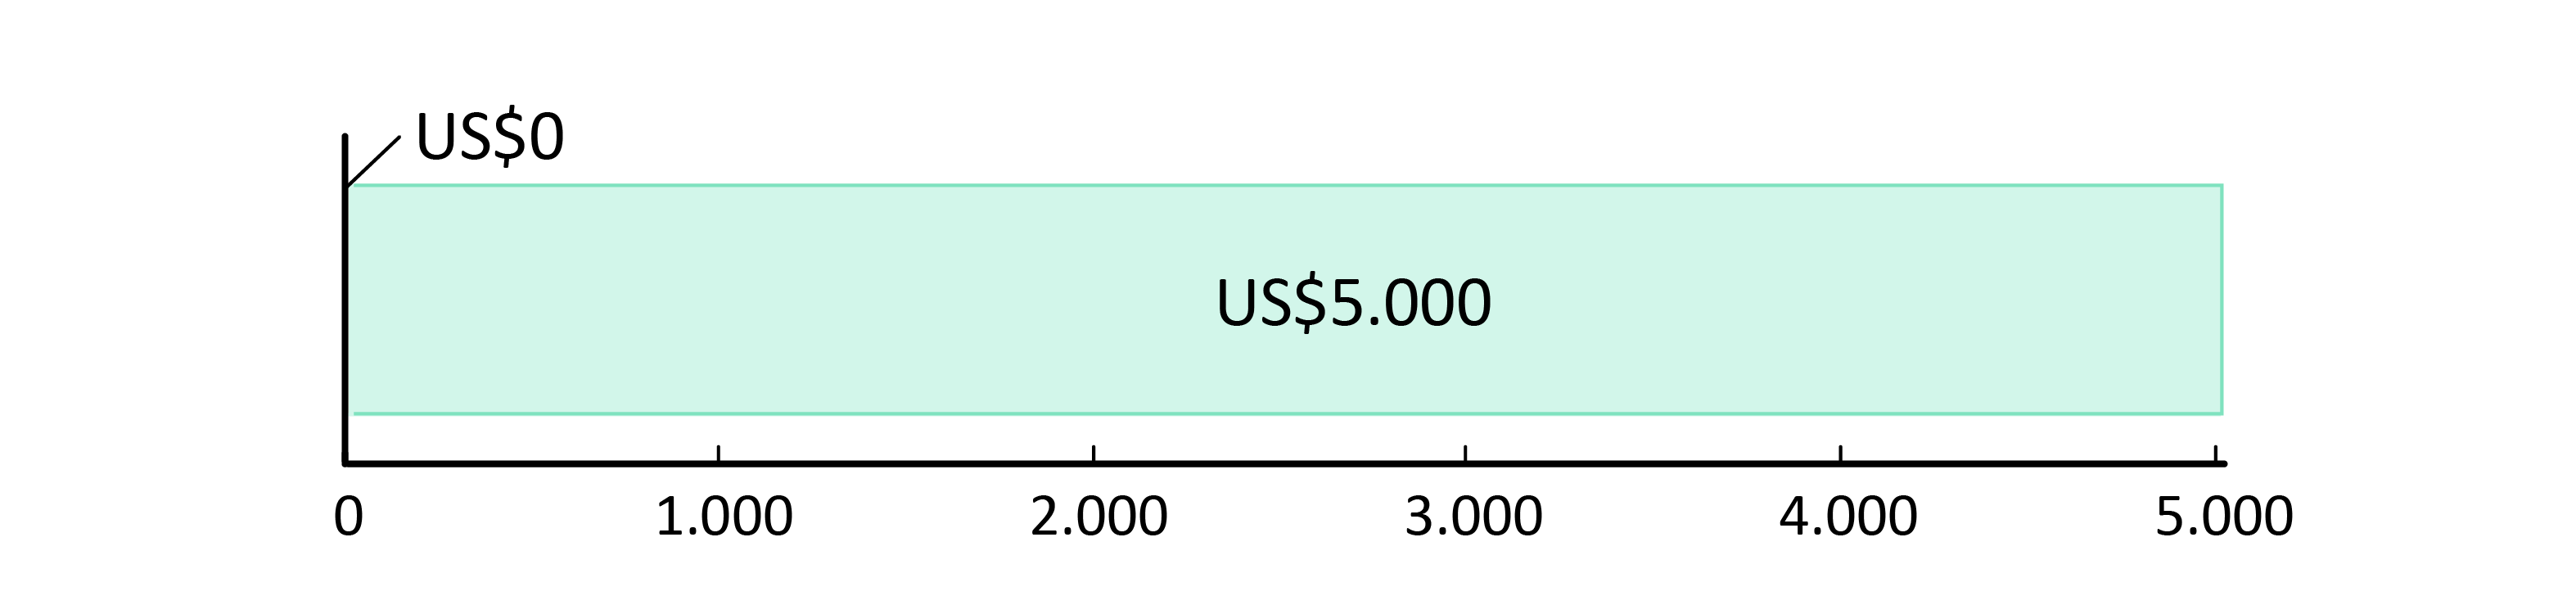 US$0 gastos; US$5.000,00 em caixa